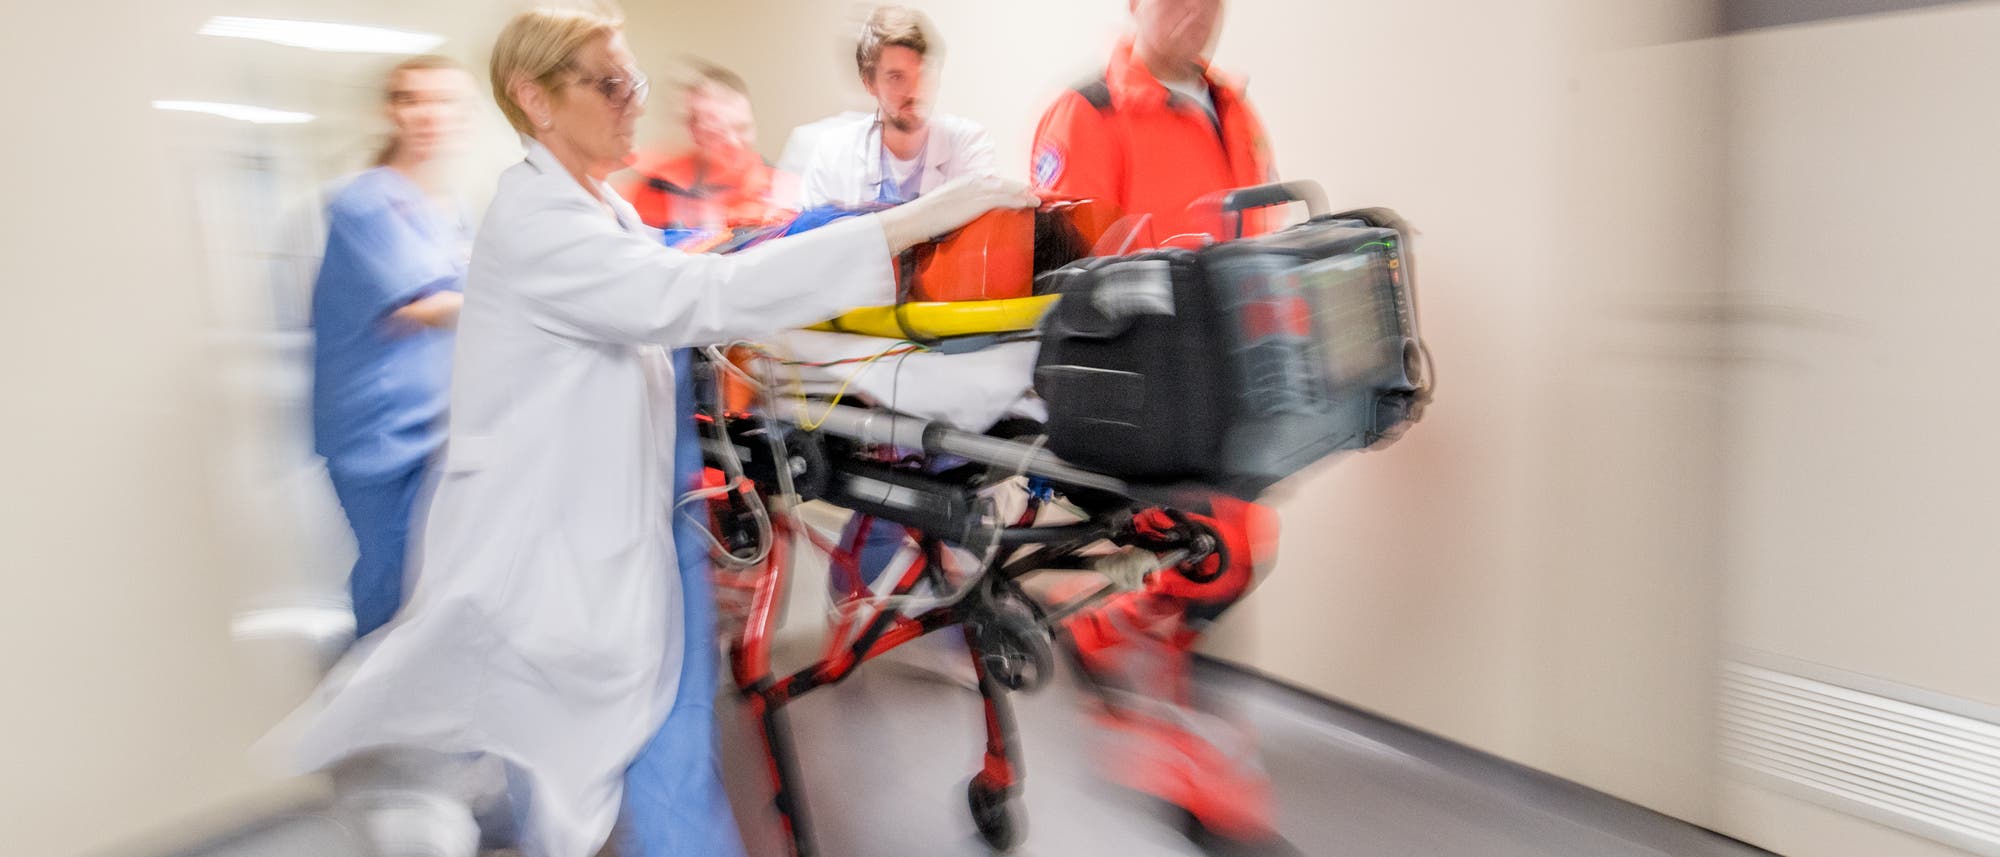 Einlieferung eines Notfalls im Krankenhaus. Notärzte und Krankenhauspersonal transportieren Verletzten auf einer mobilen Liege